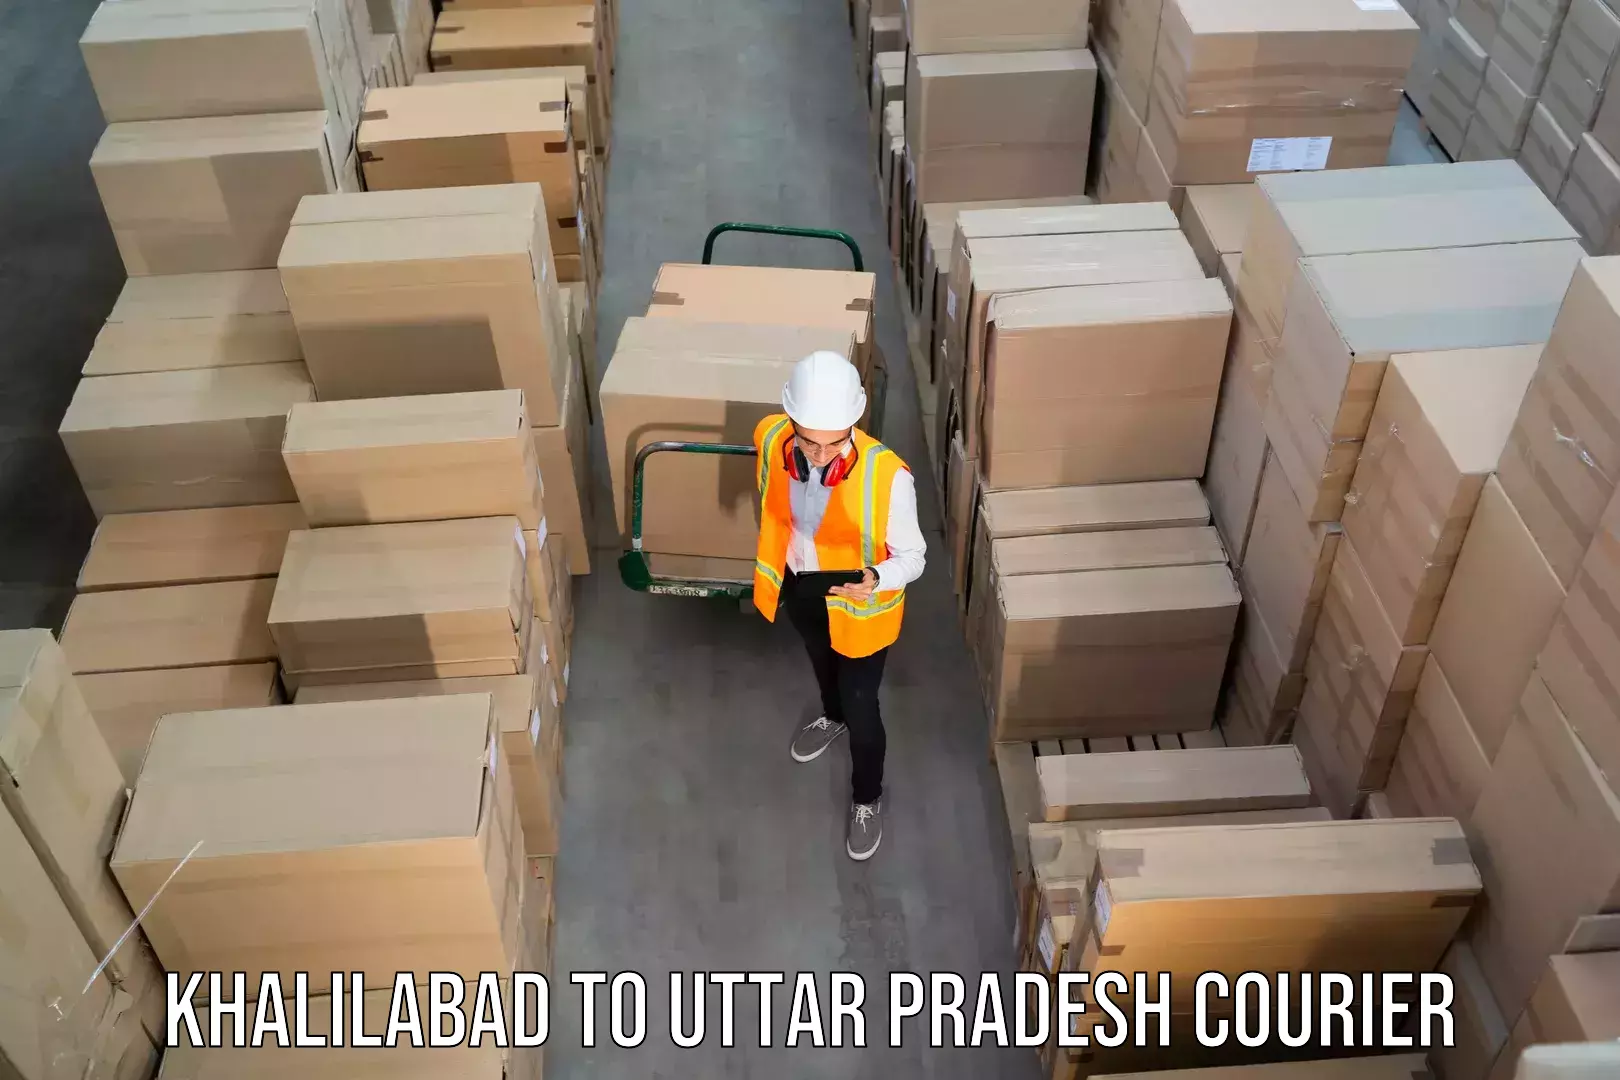 Budget-friendly shipping Khalilabad to Bhadohi